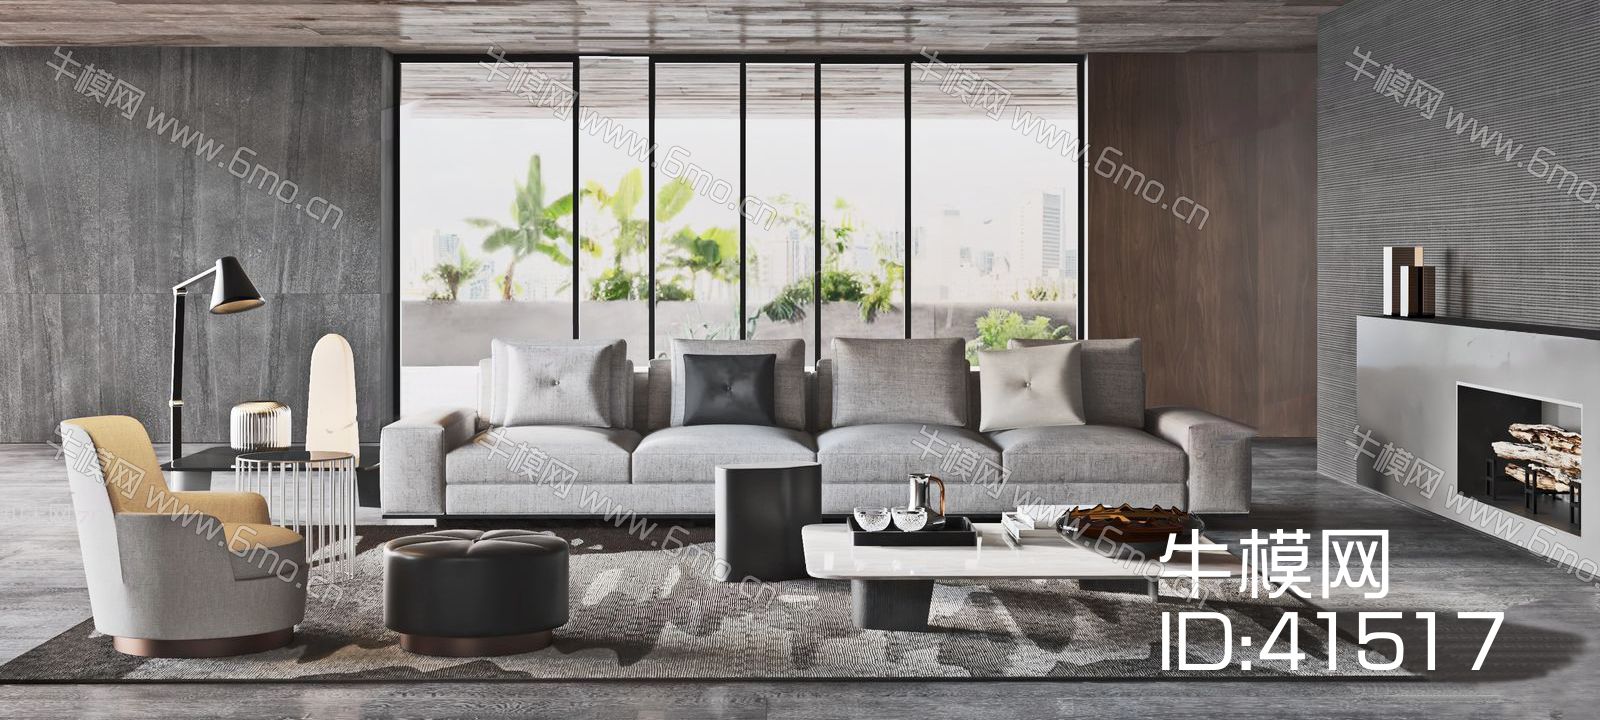 现代混搭灰色沙发、黑色茶几组合